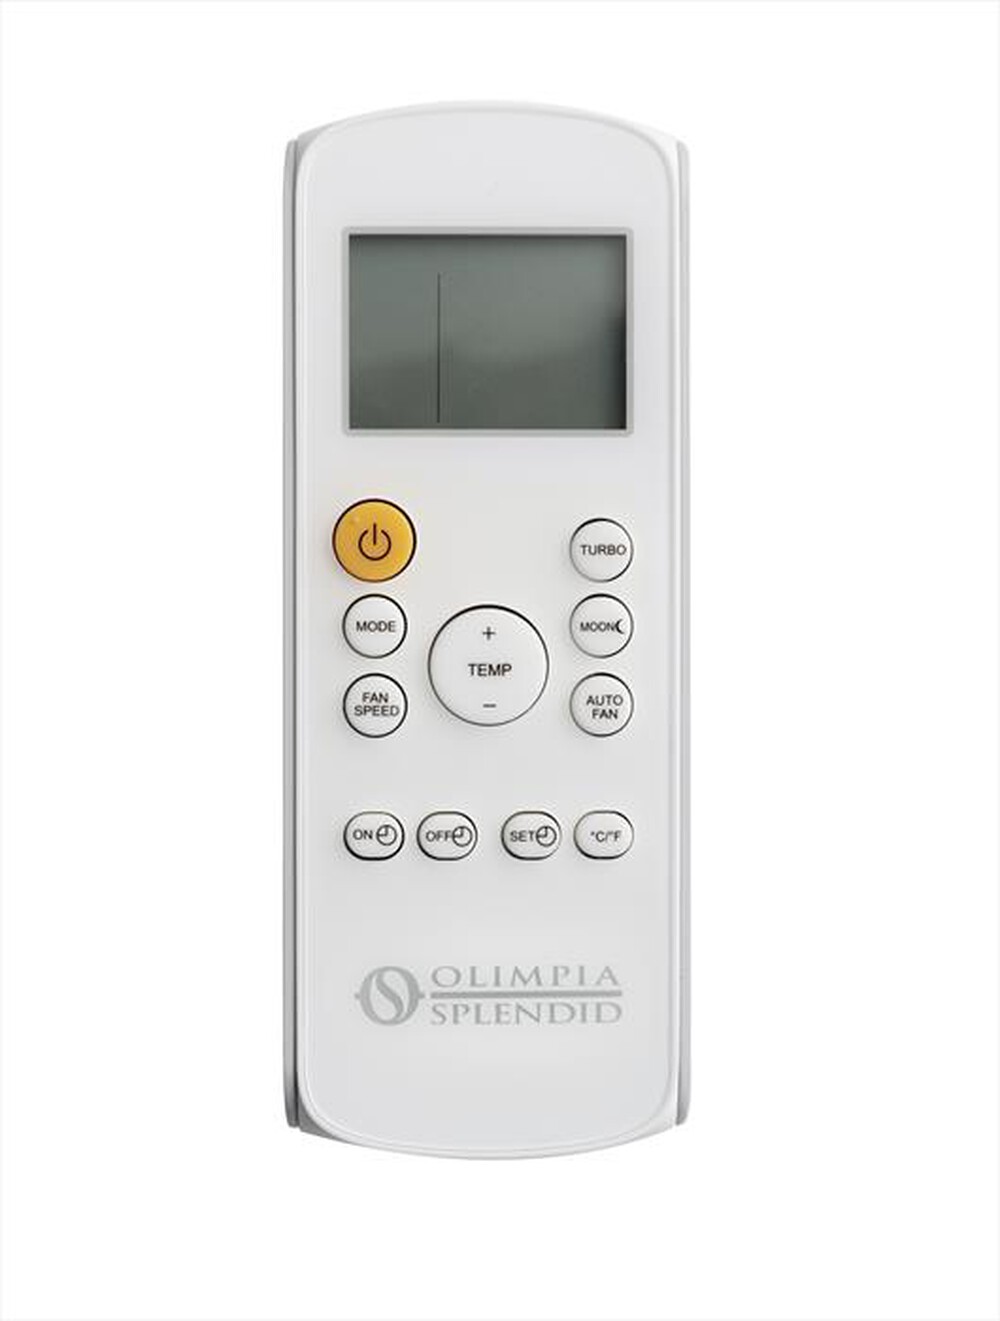 "OLIMPIA SPLENDID - DOLCECLIMA SILENT 10 P Condizionatore portatile-Bianco"